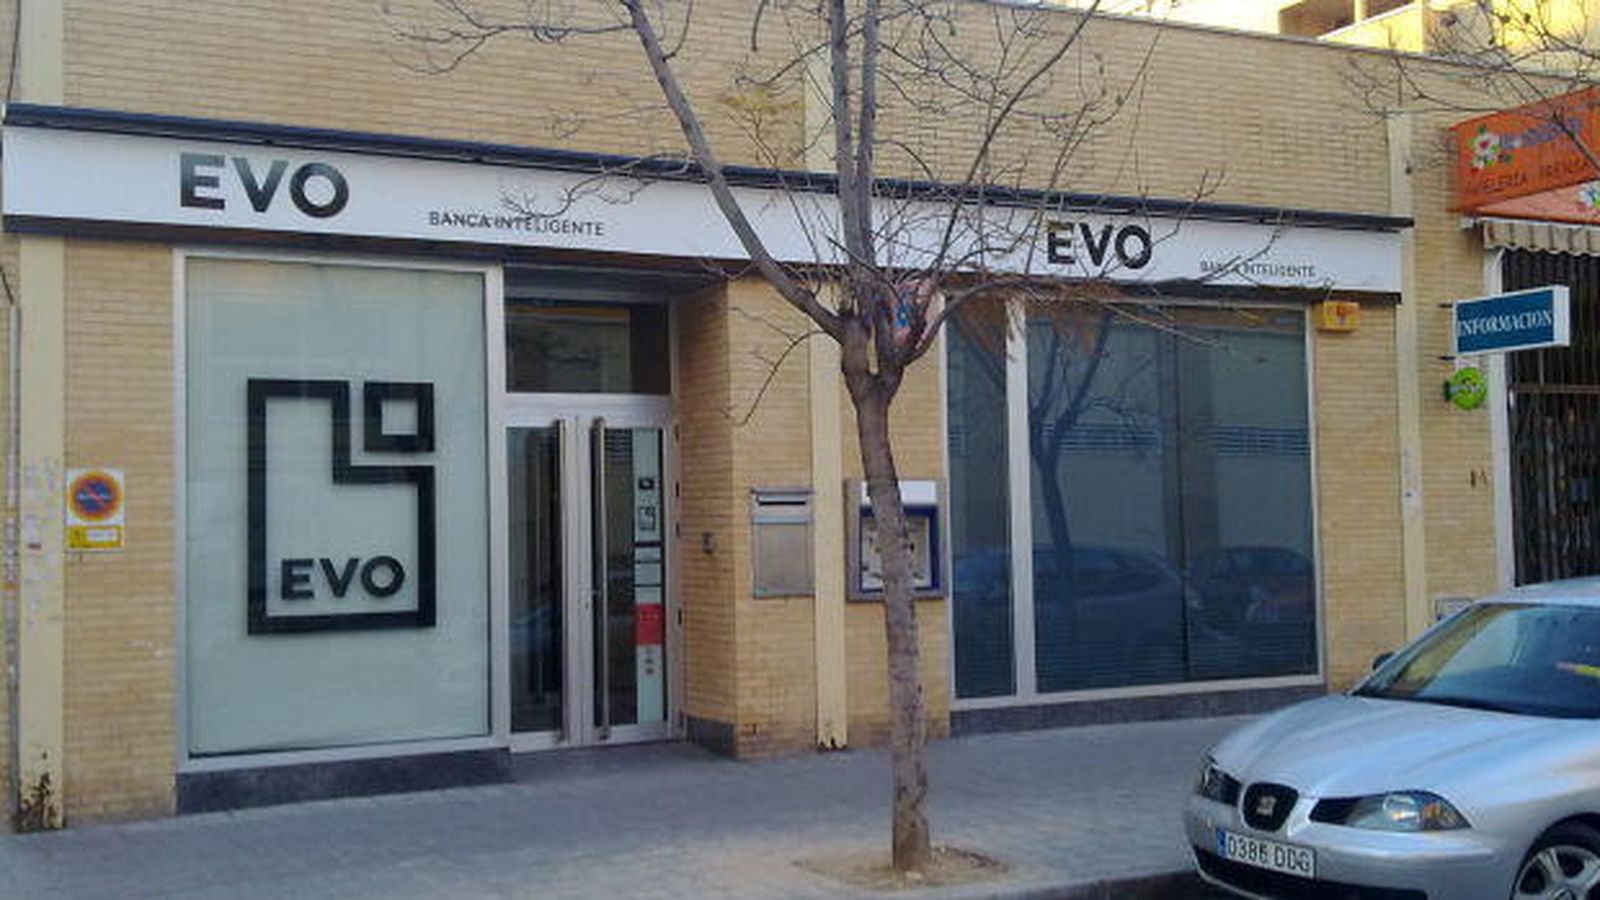 Foto: Evo Banco devolverá los dos euros de comisión que carguen otras entidades. (Foto: pildoraslegales.com)